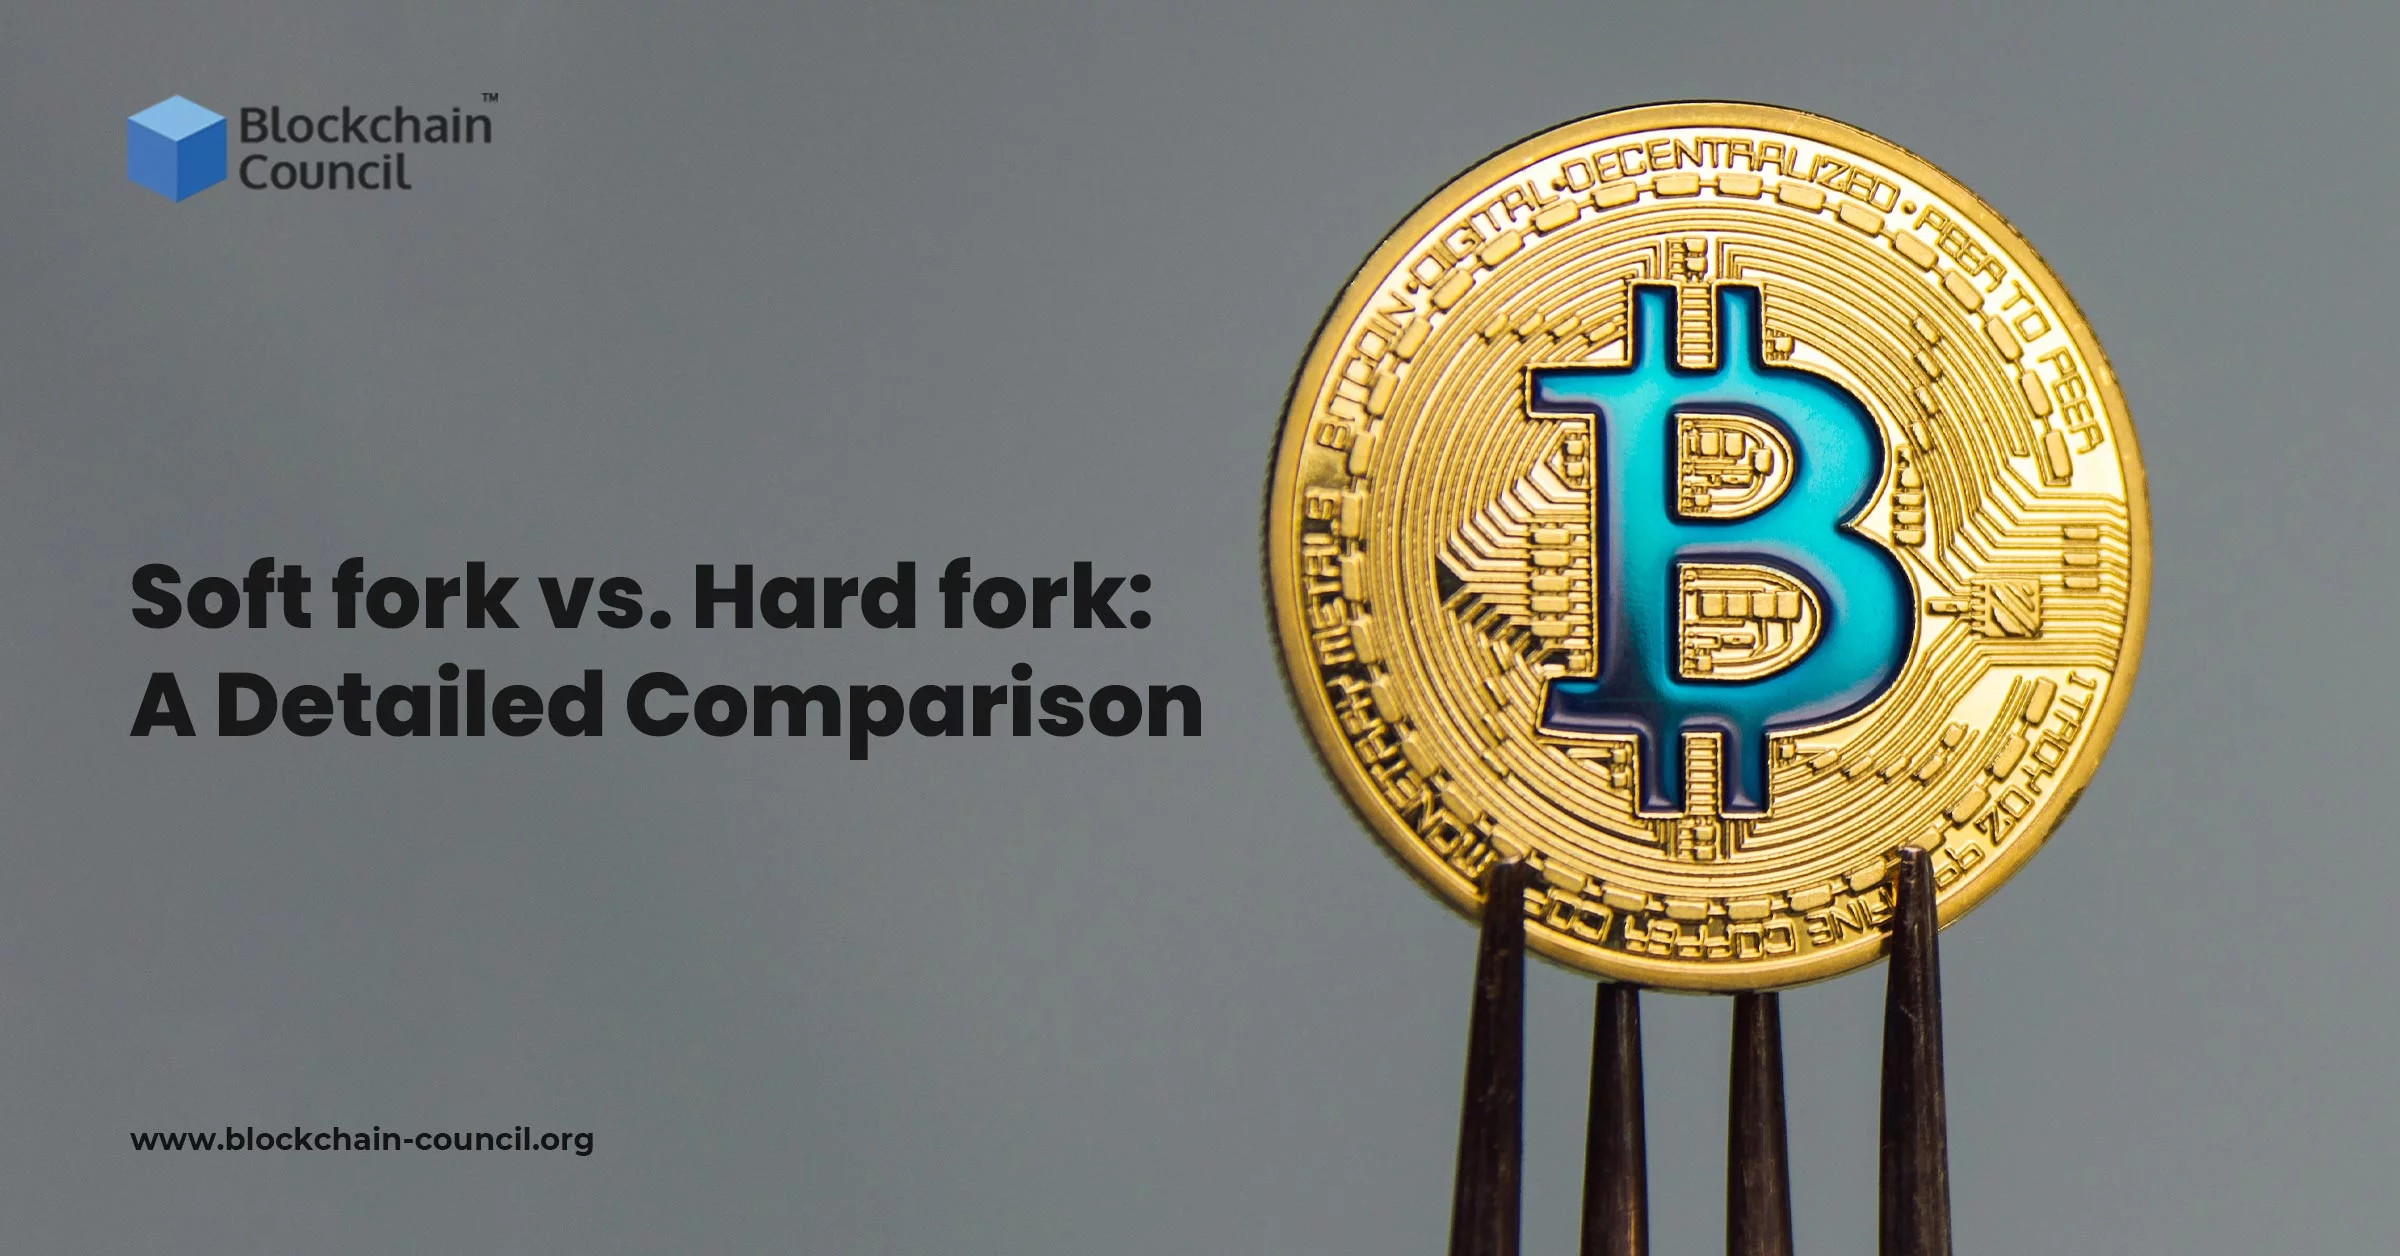 Soft fork vs. Hard fork: A Detailed Comparison